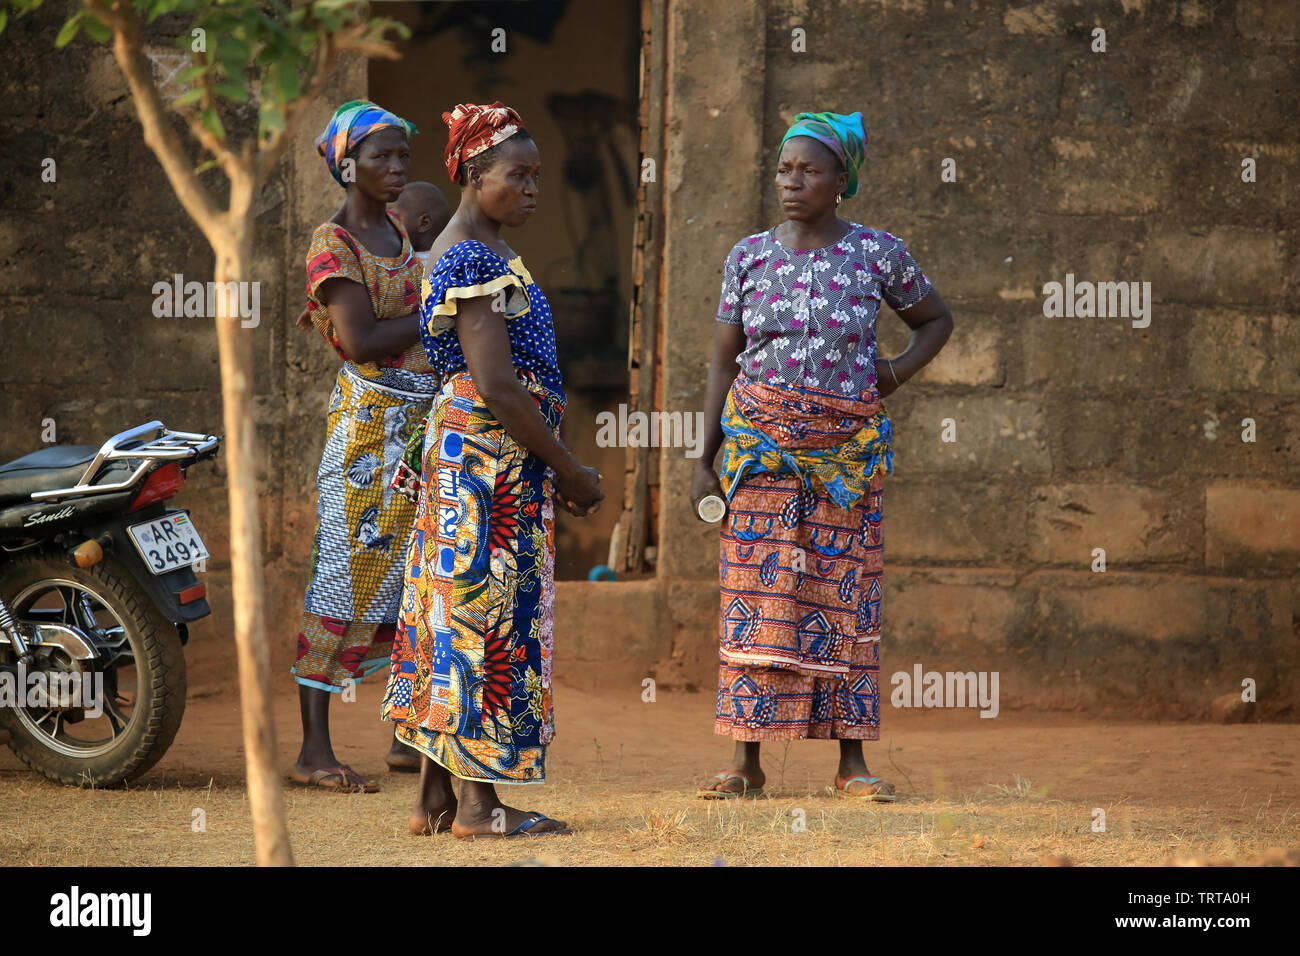 FEMMES togolaises discutant Ensemble.Togo. Afrique de l'Ouest. Stockfoto